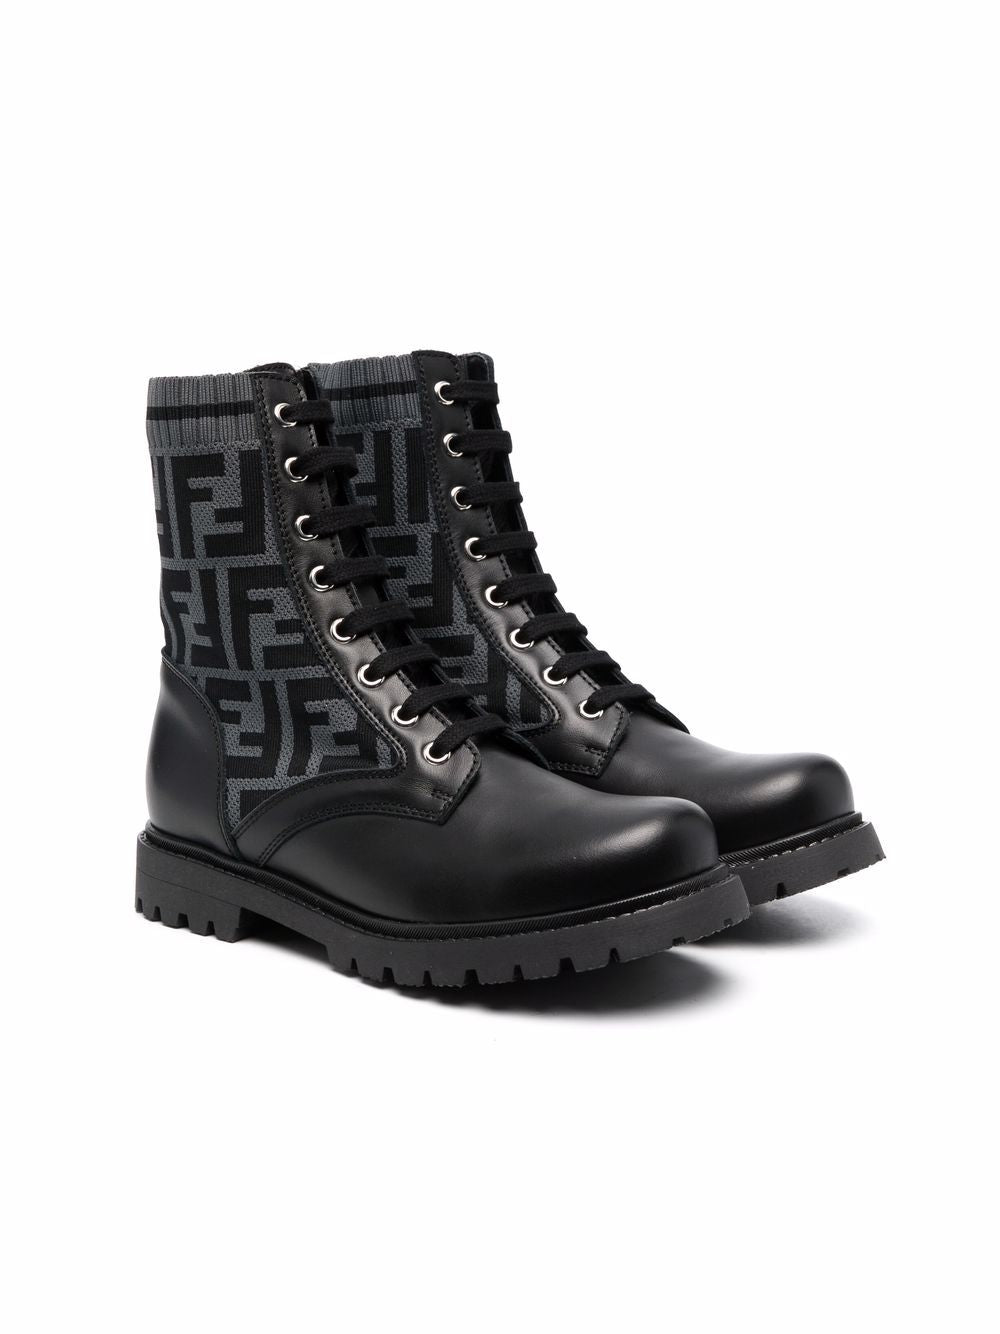 FENDI KIDS FF-motif lace-up boots Black/Grey - MAISONDEFASHION.COM